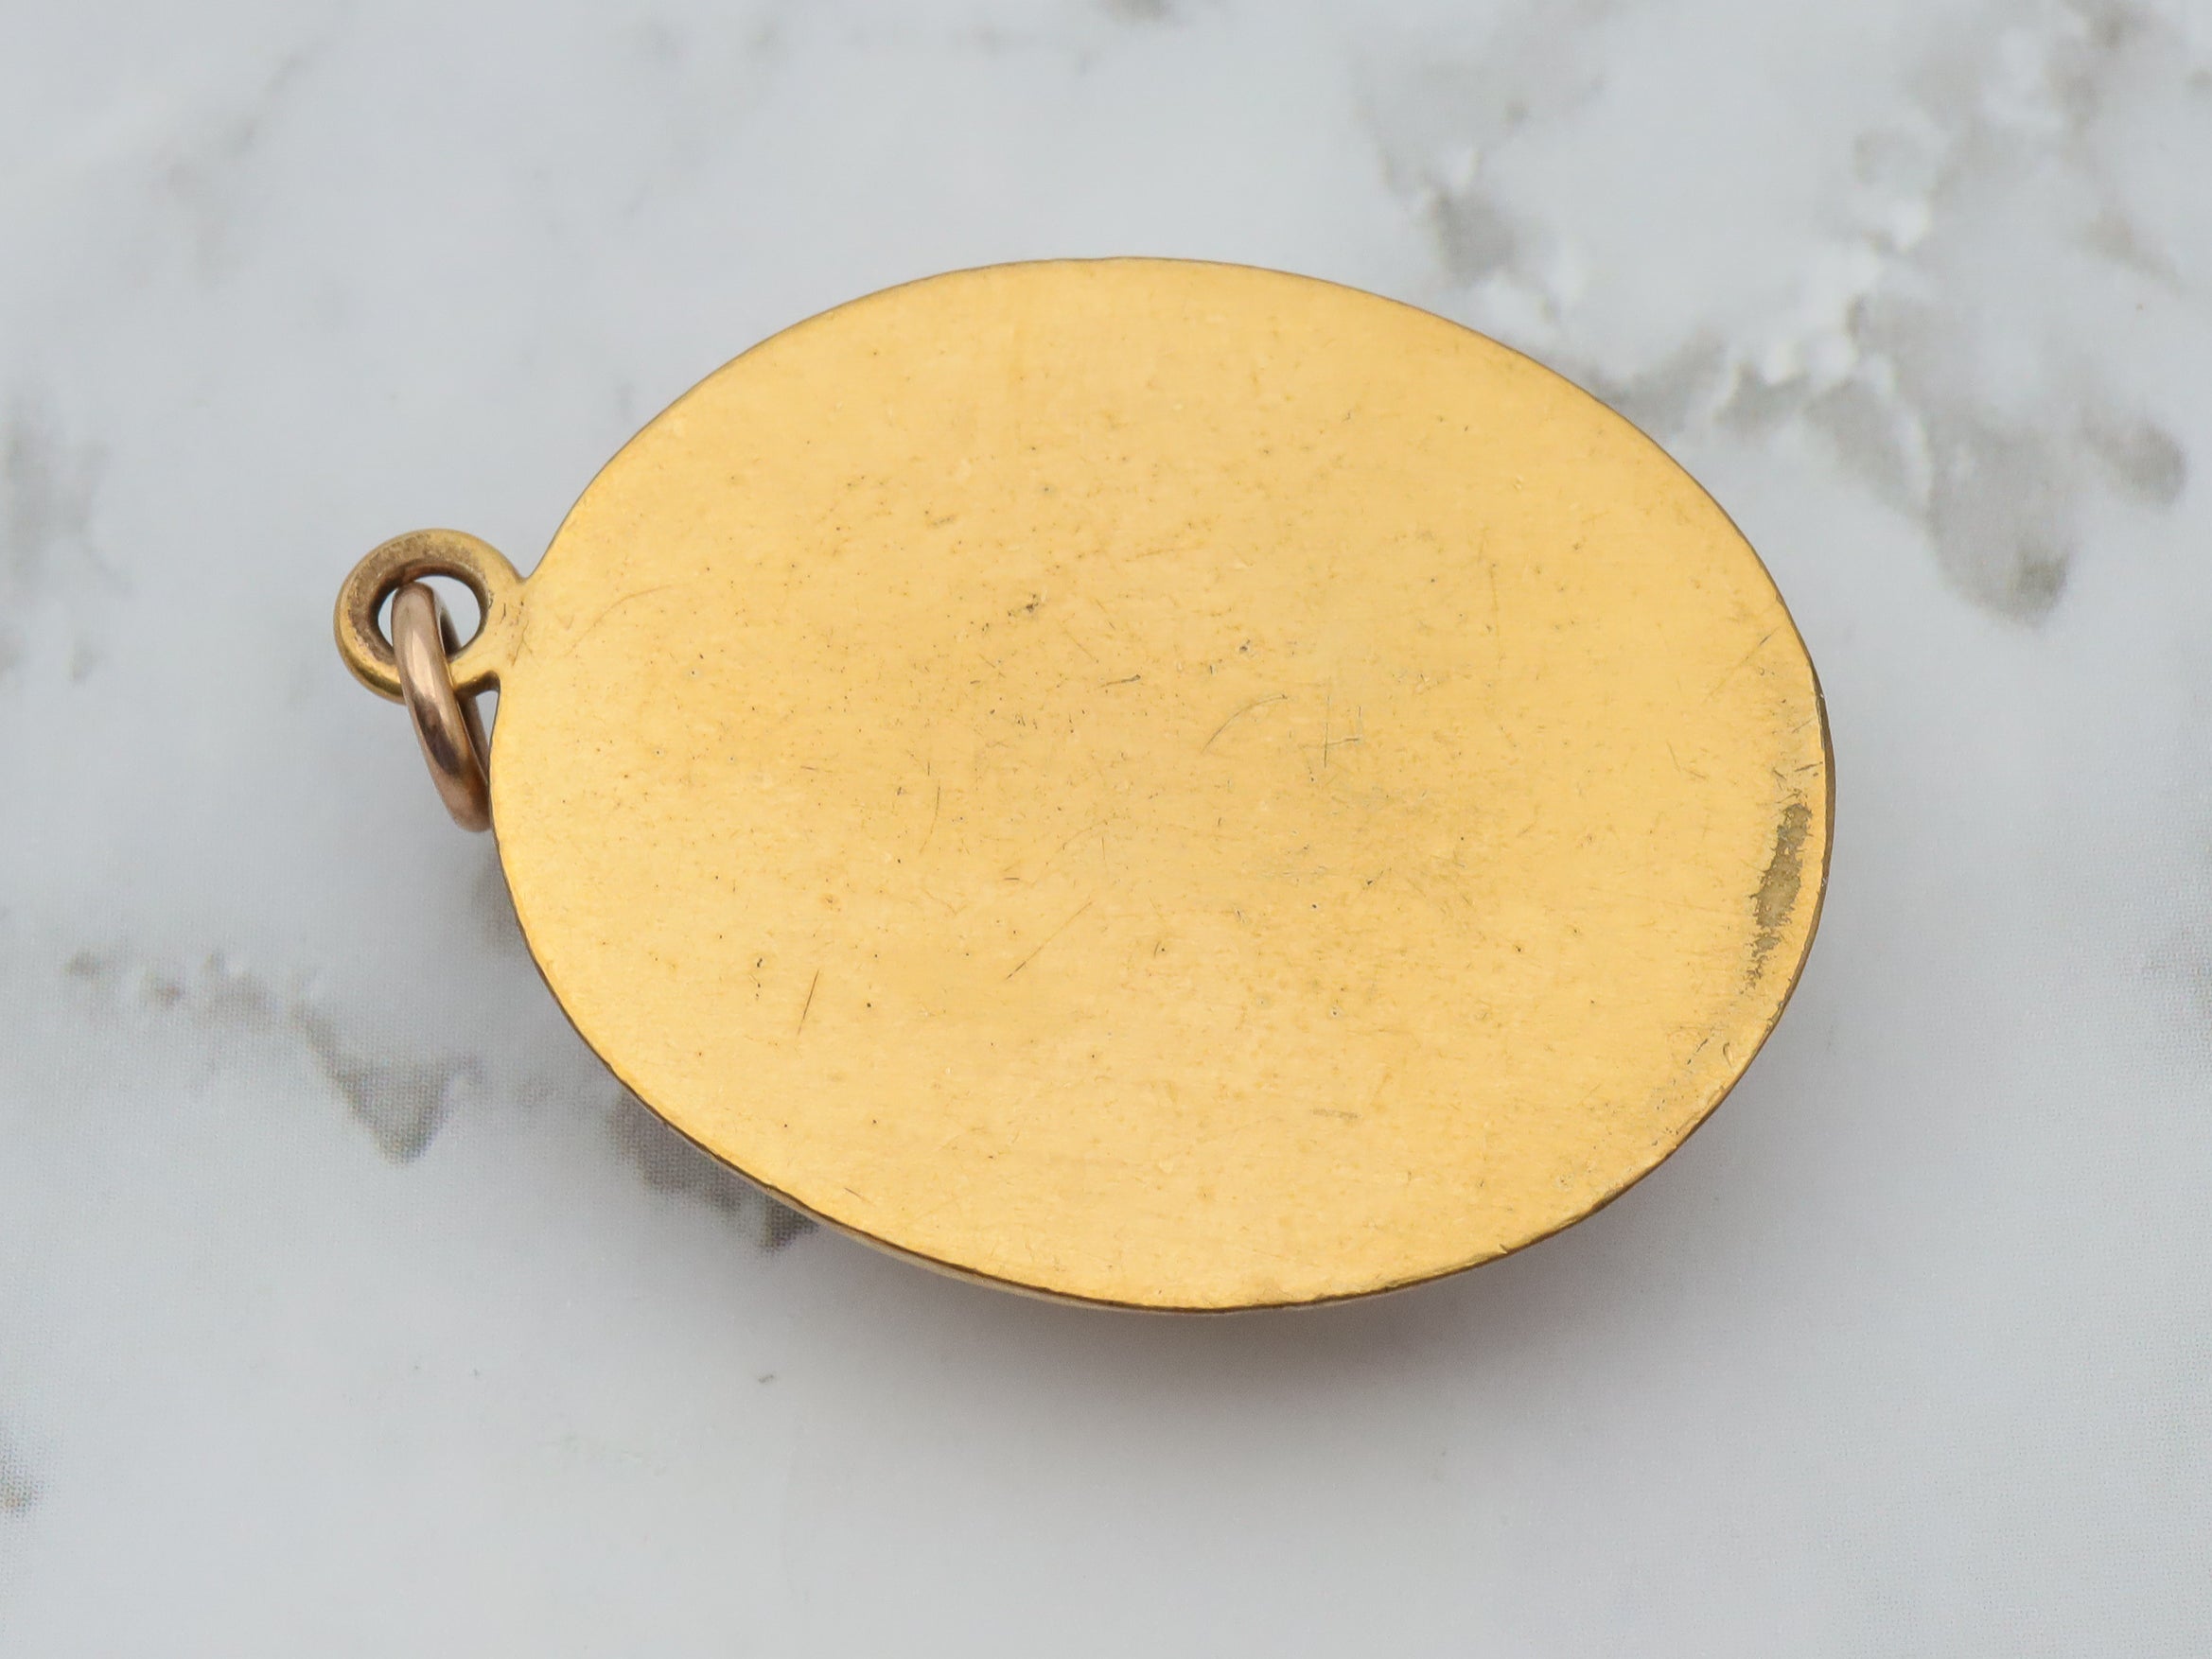 Exceptional Art Nouveau gold filled & art glass cabochon pendant